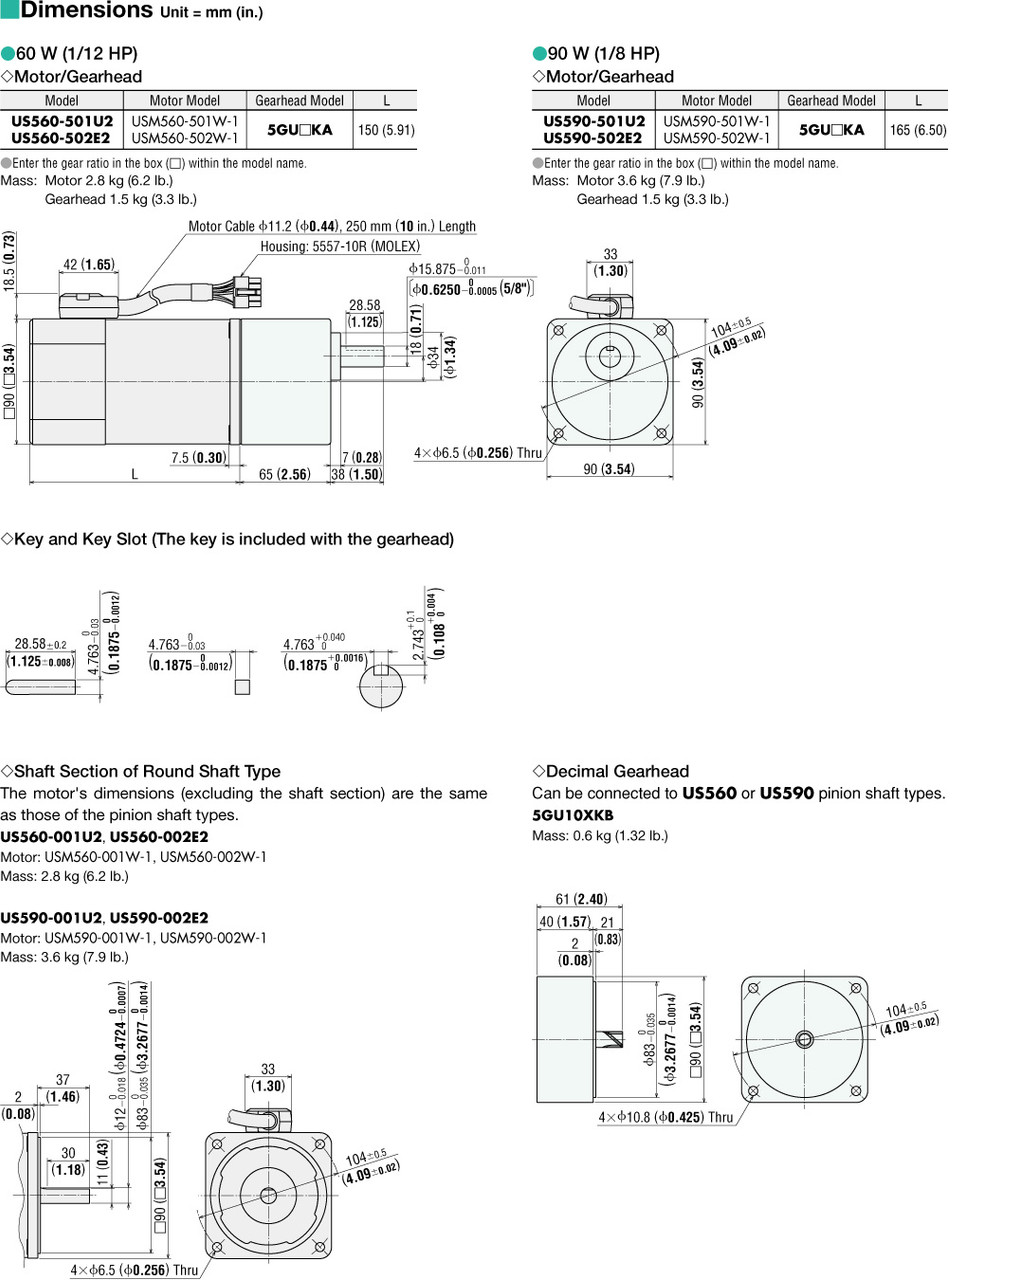 USM560-502W-1 / 5GU5KA - Dimensions